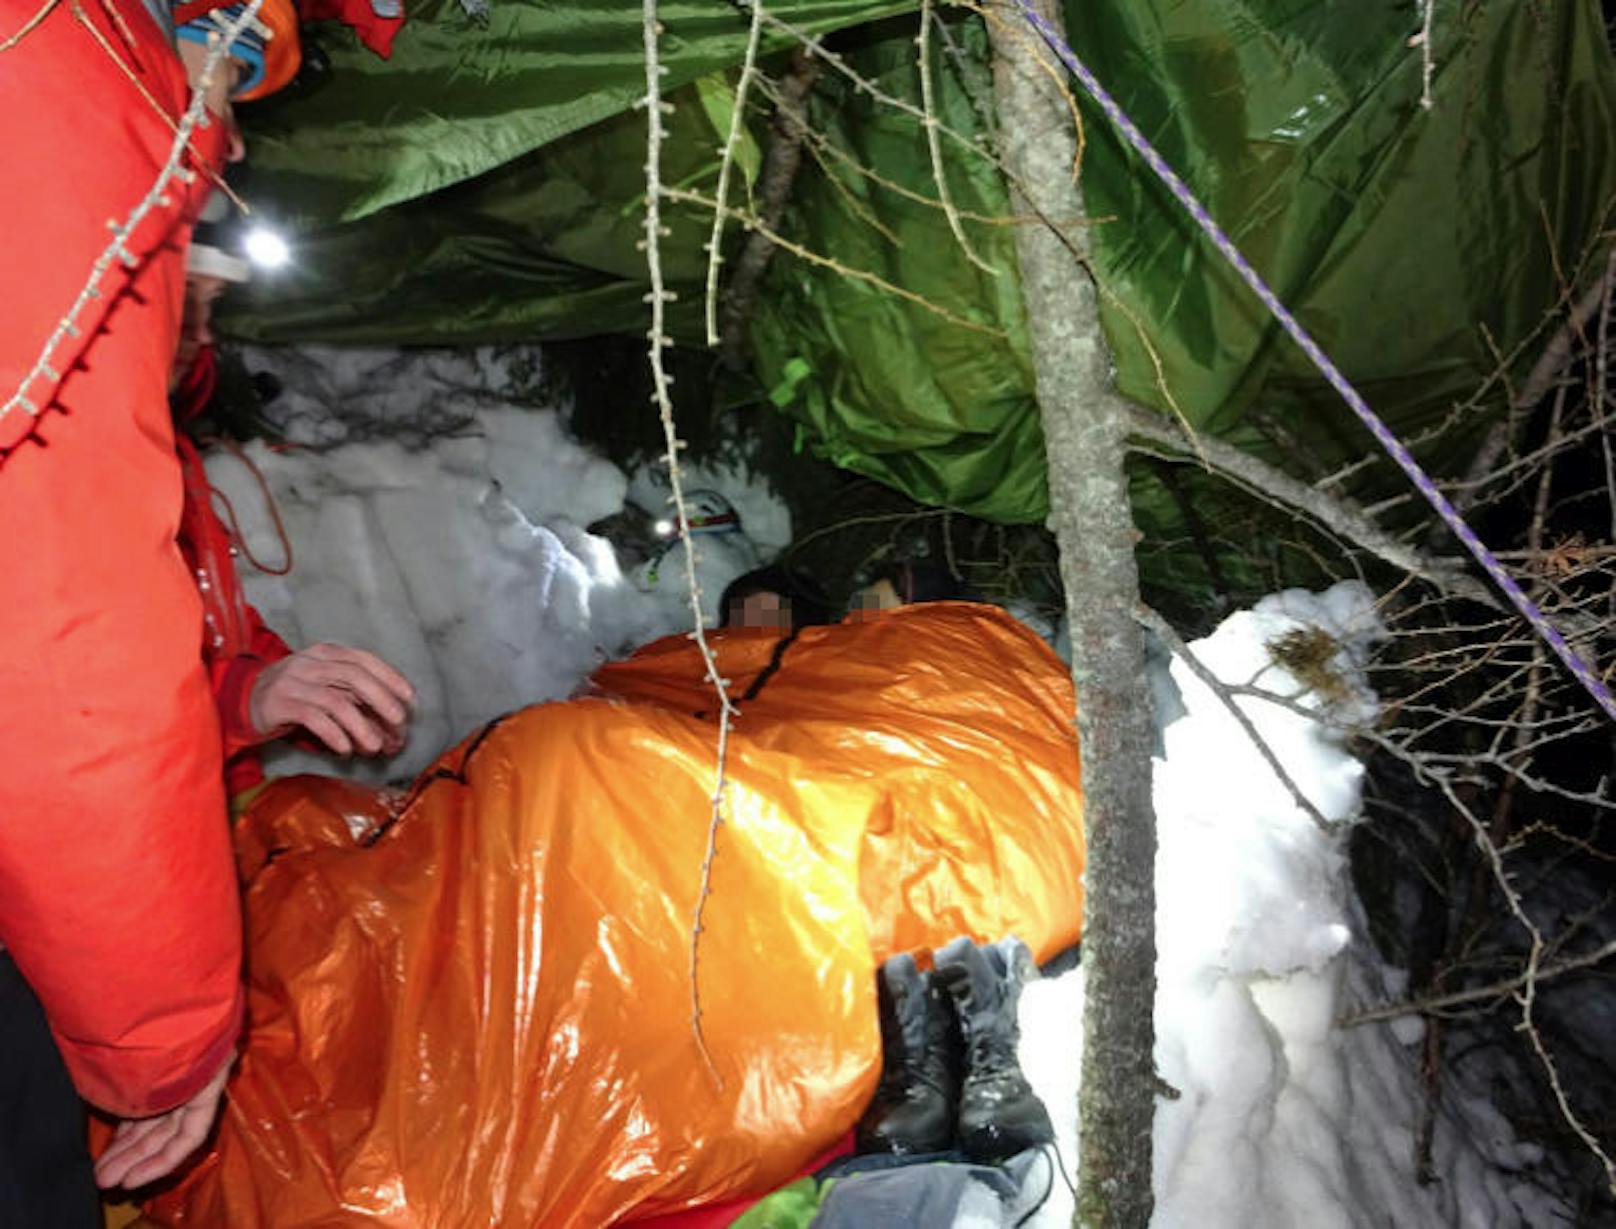 Gut eingepackt verbrachten die beiden Bergsteiger aus Tschechien die kalte Nacht am Berg.